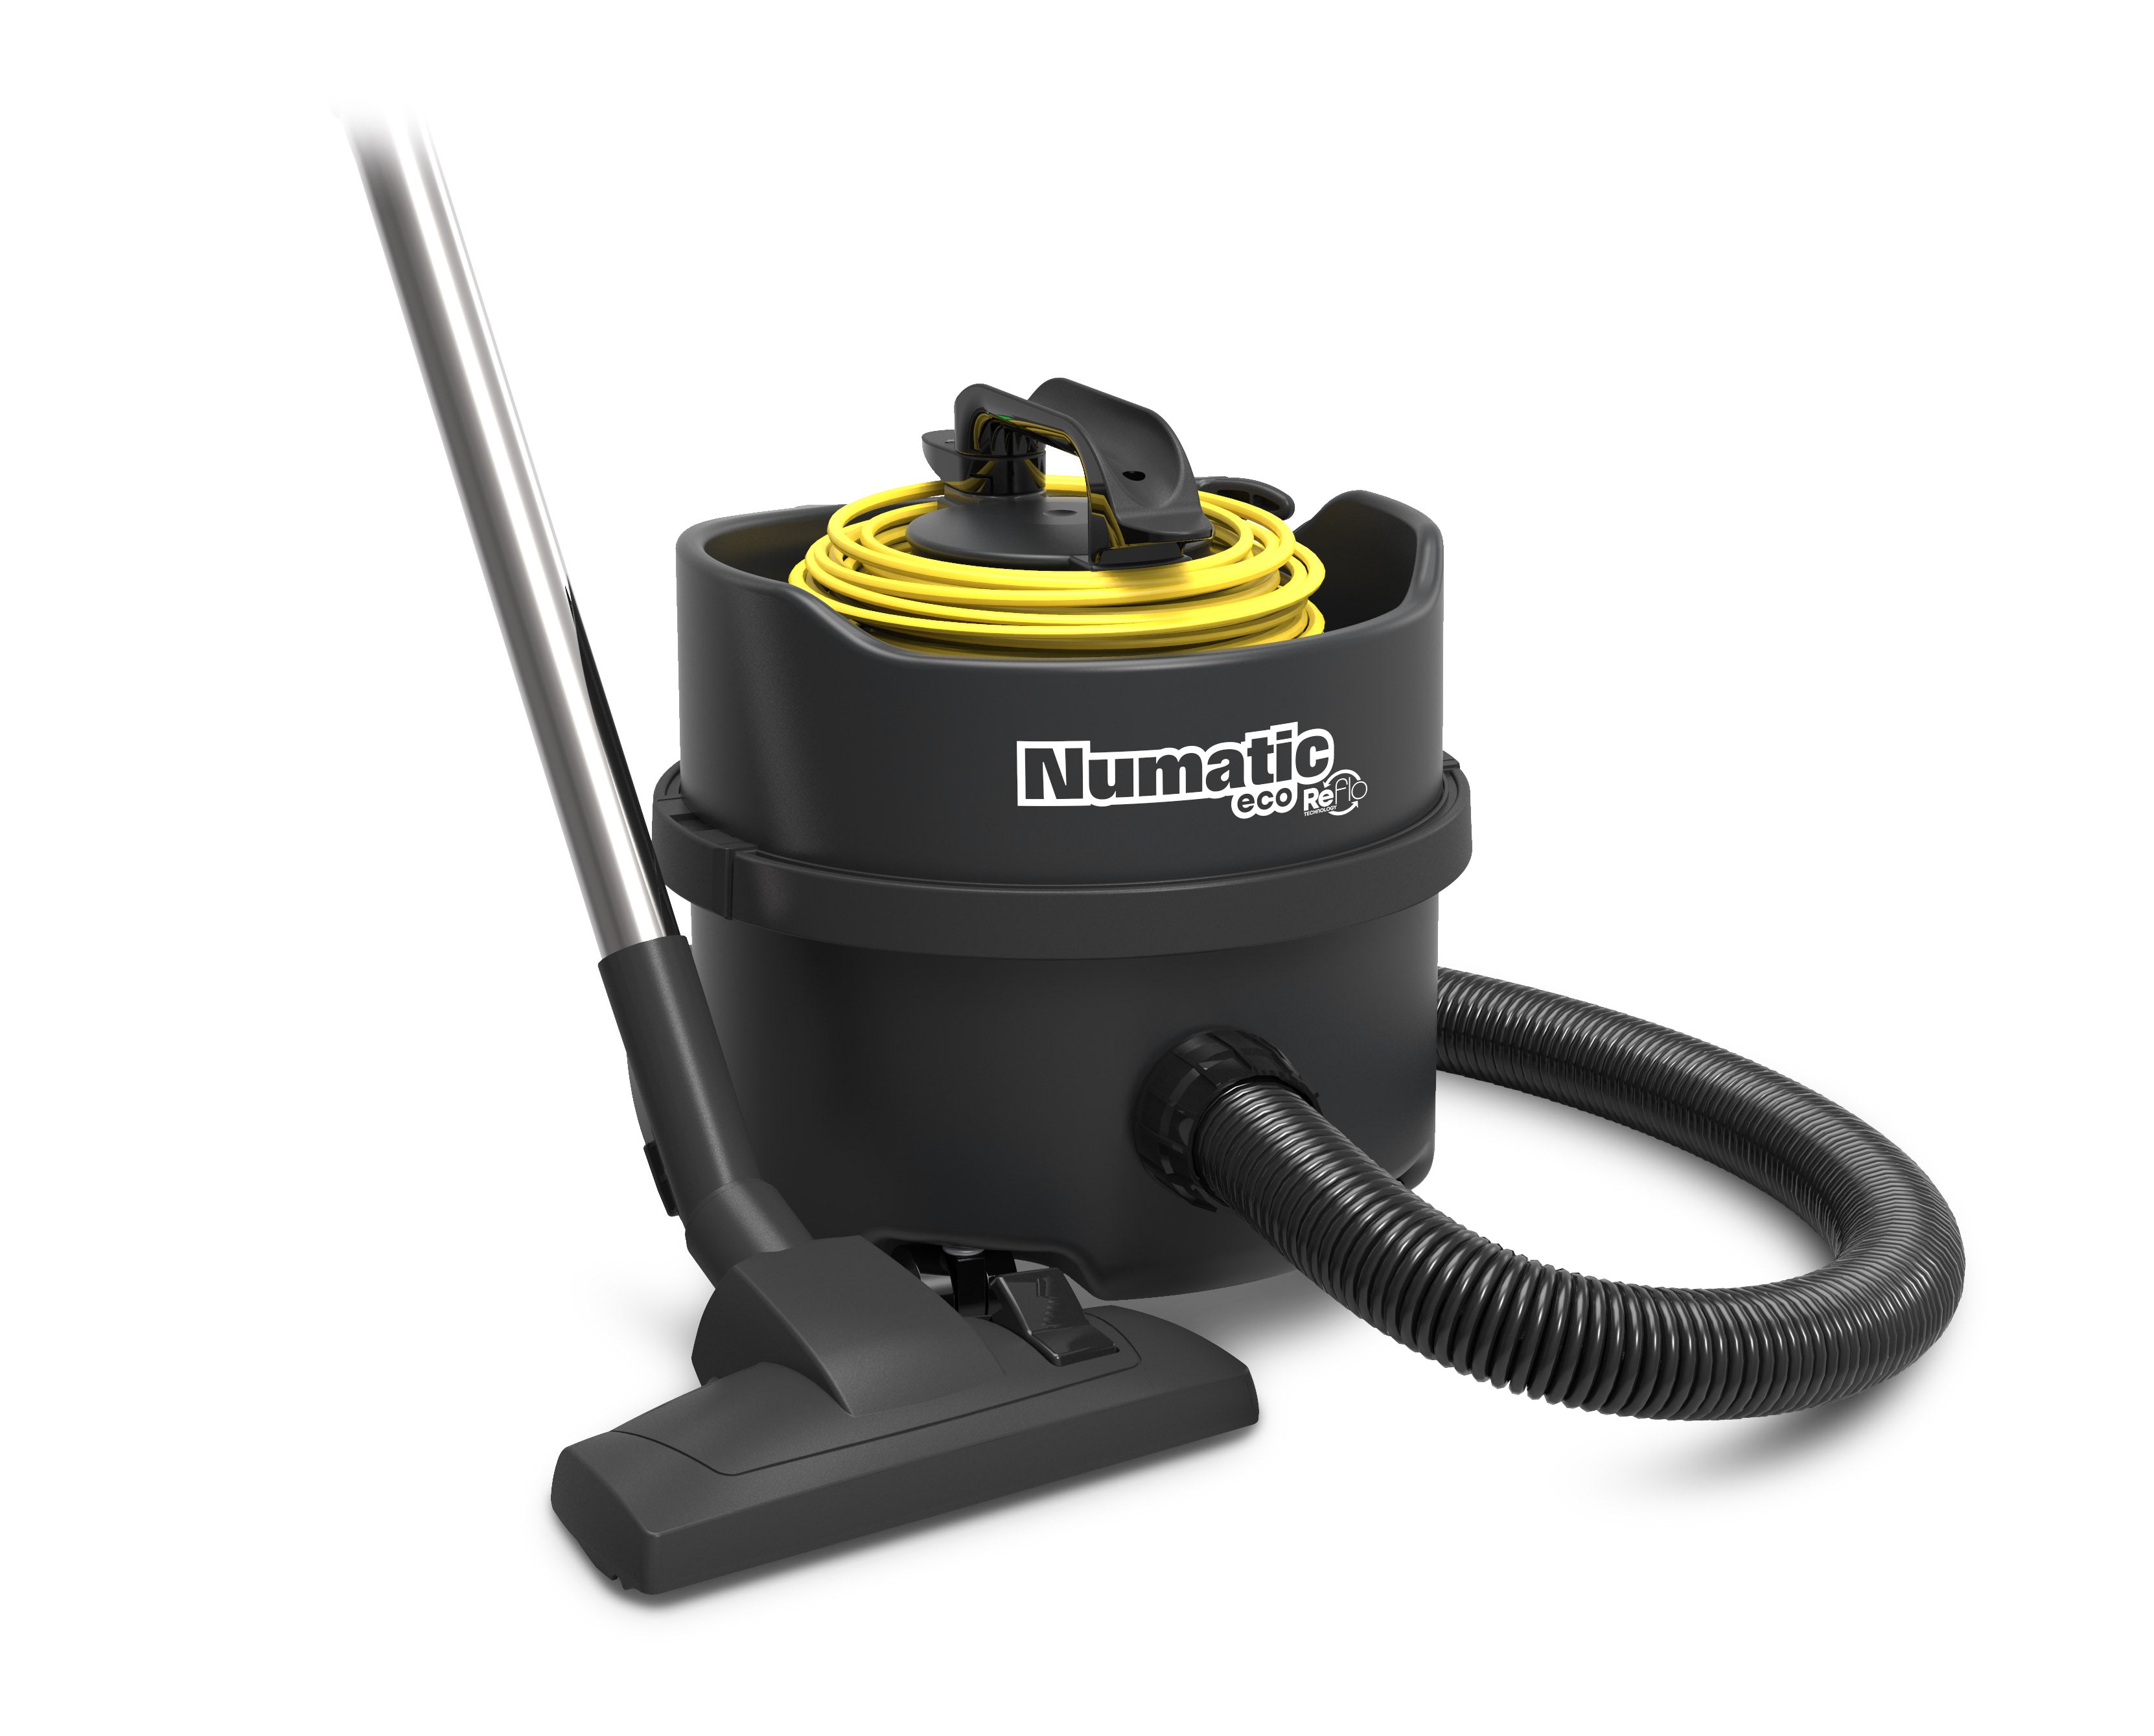 Numatic ERP180 Eco ReFlo Vacuum Cleaner